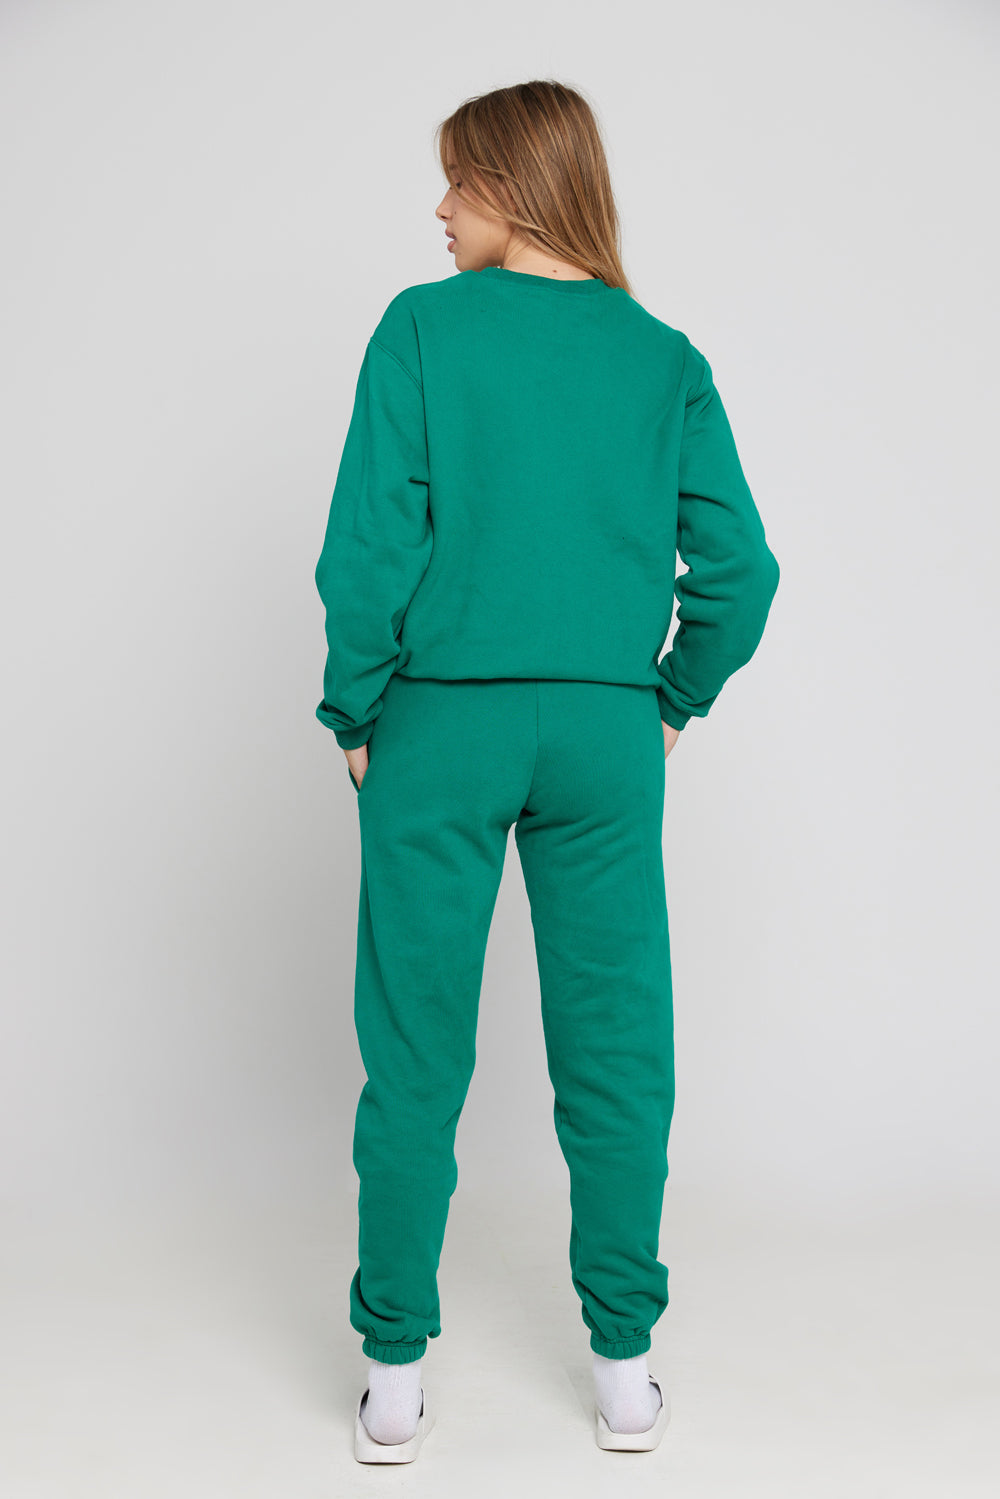 מכנס טרנינג מבד עבה ומחמם בצבע ירוק זית - Cloud